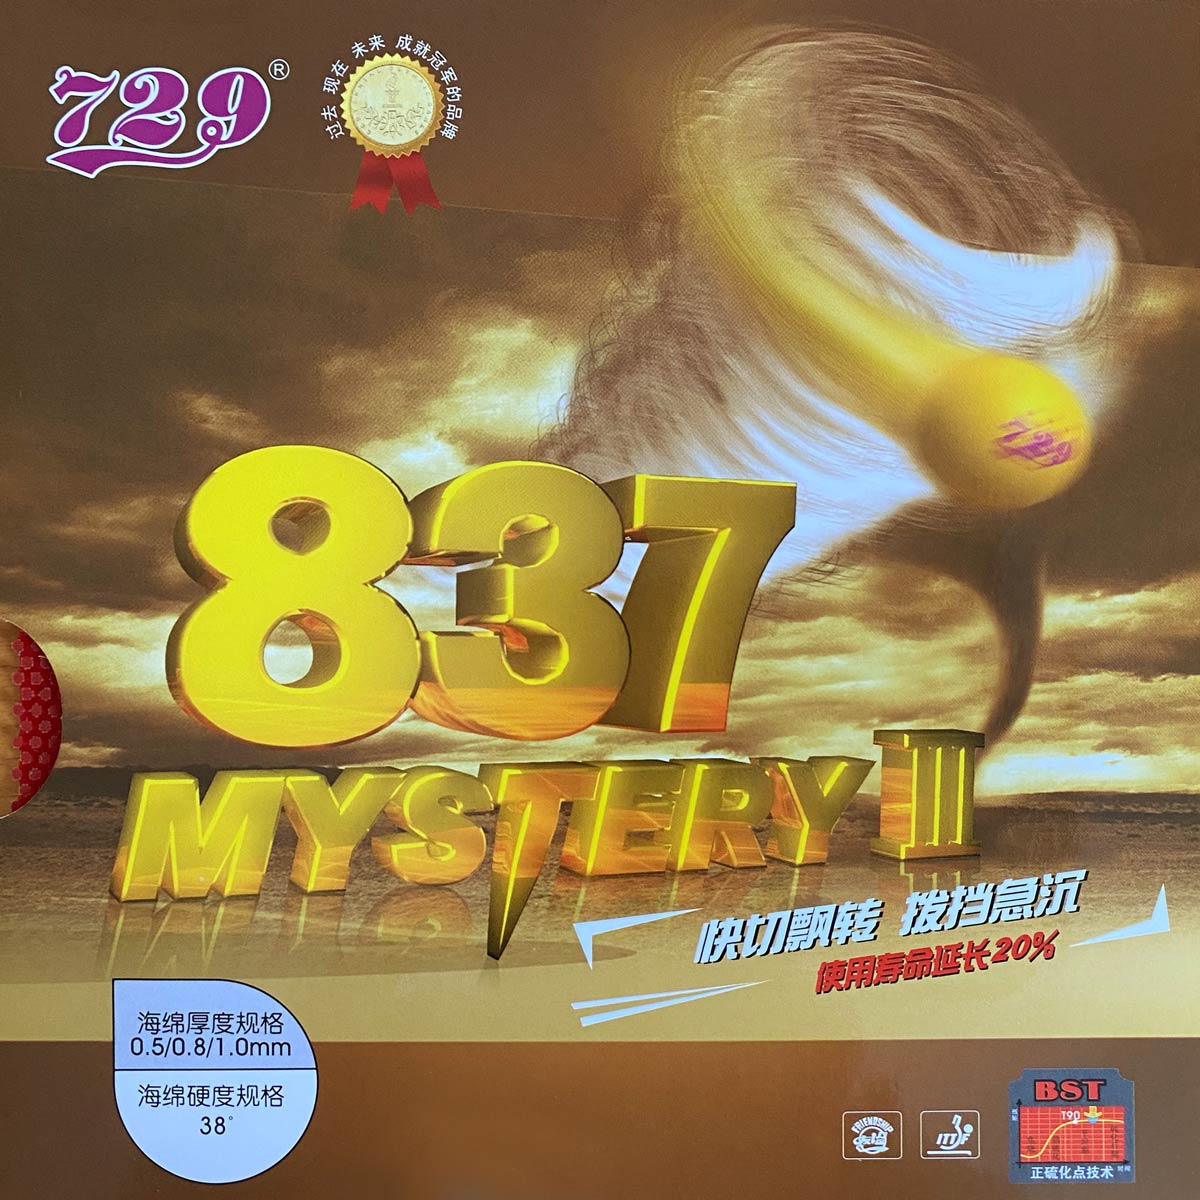 Friendship rubber 837 Mystery III